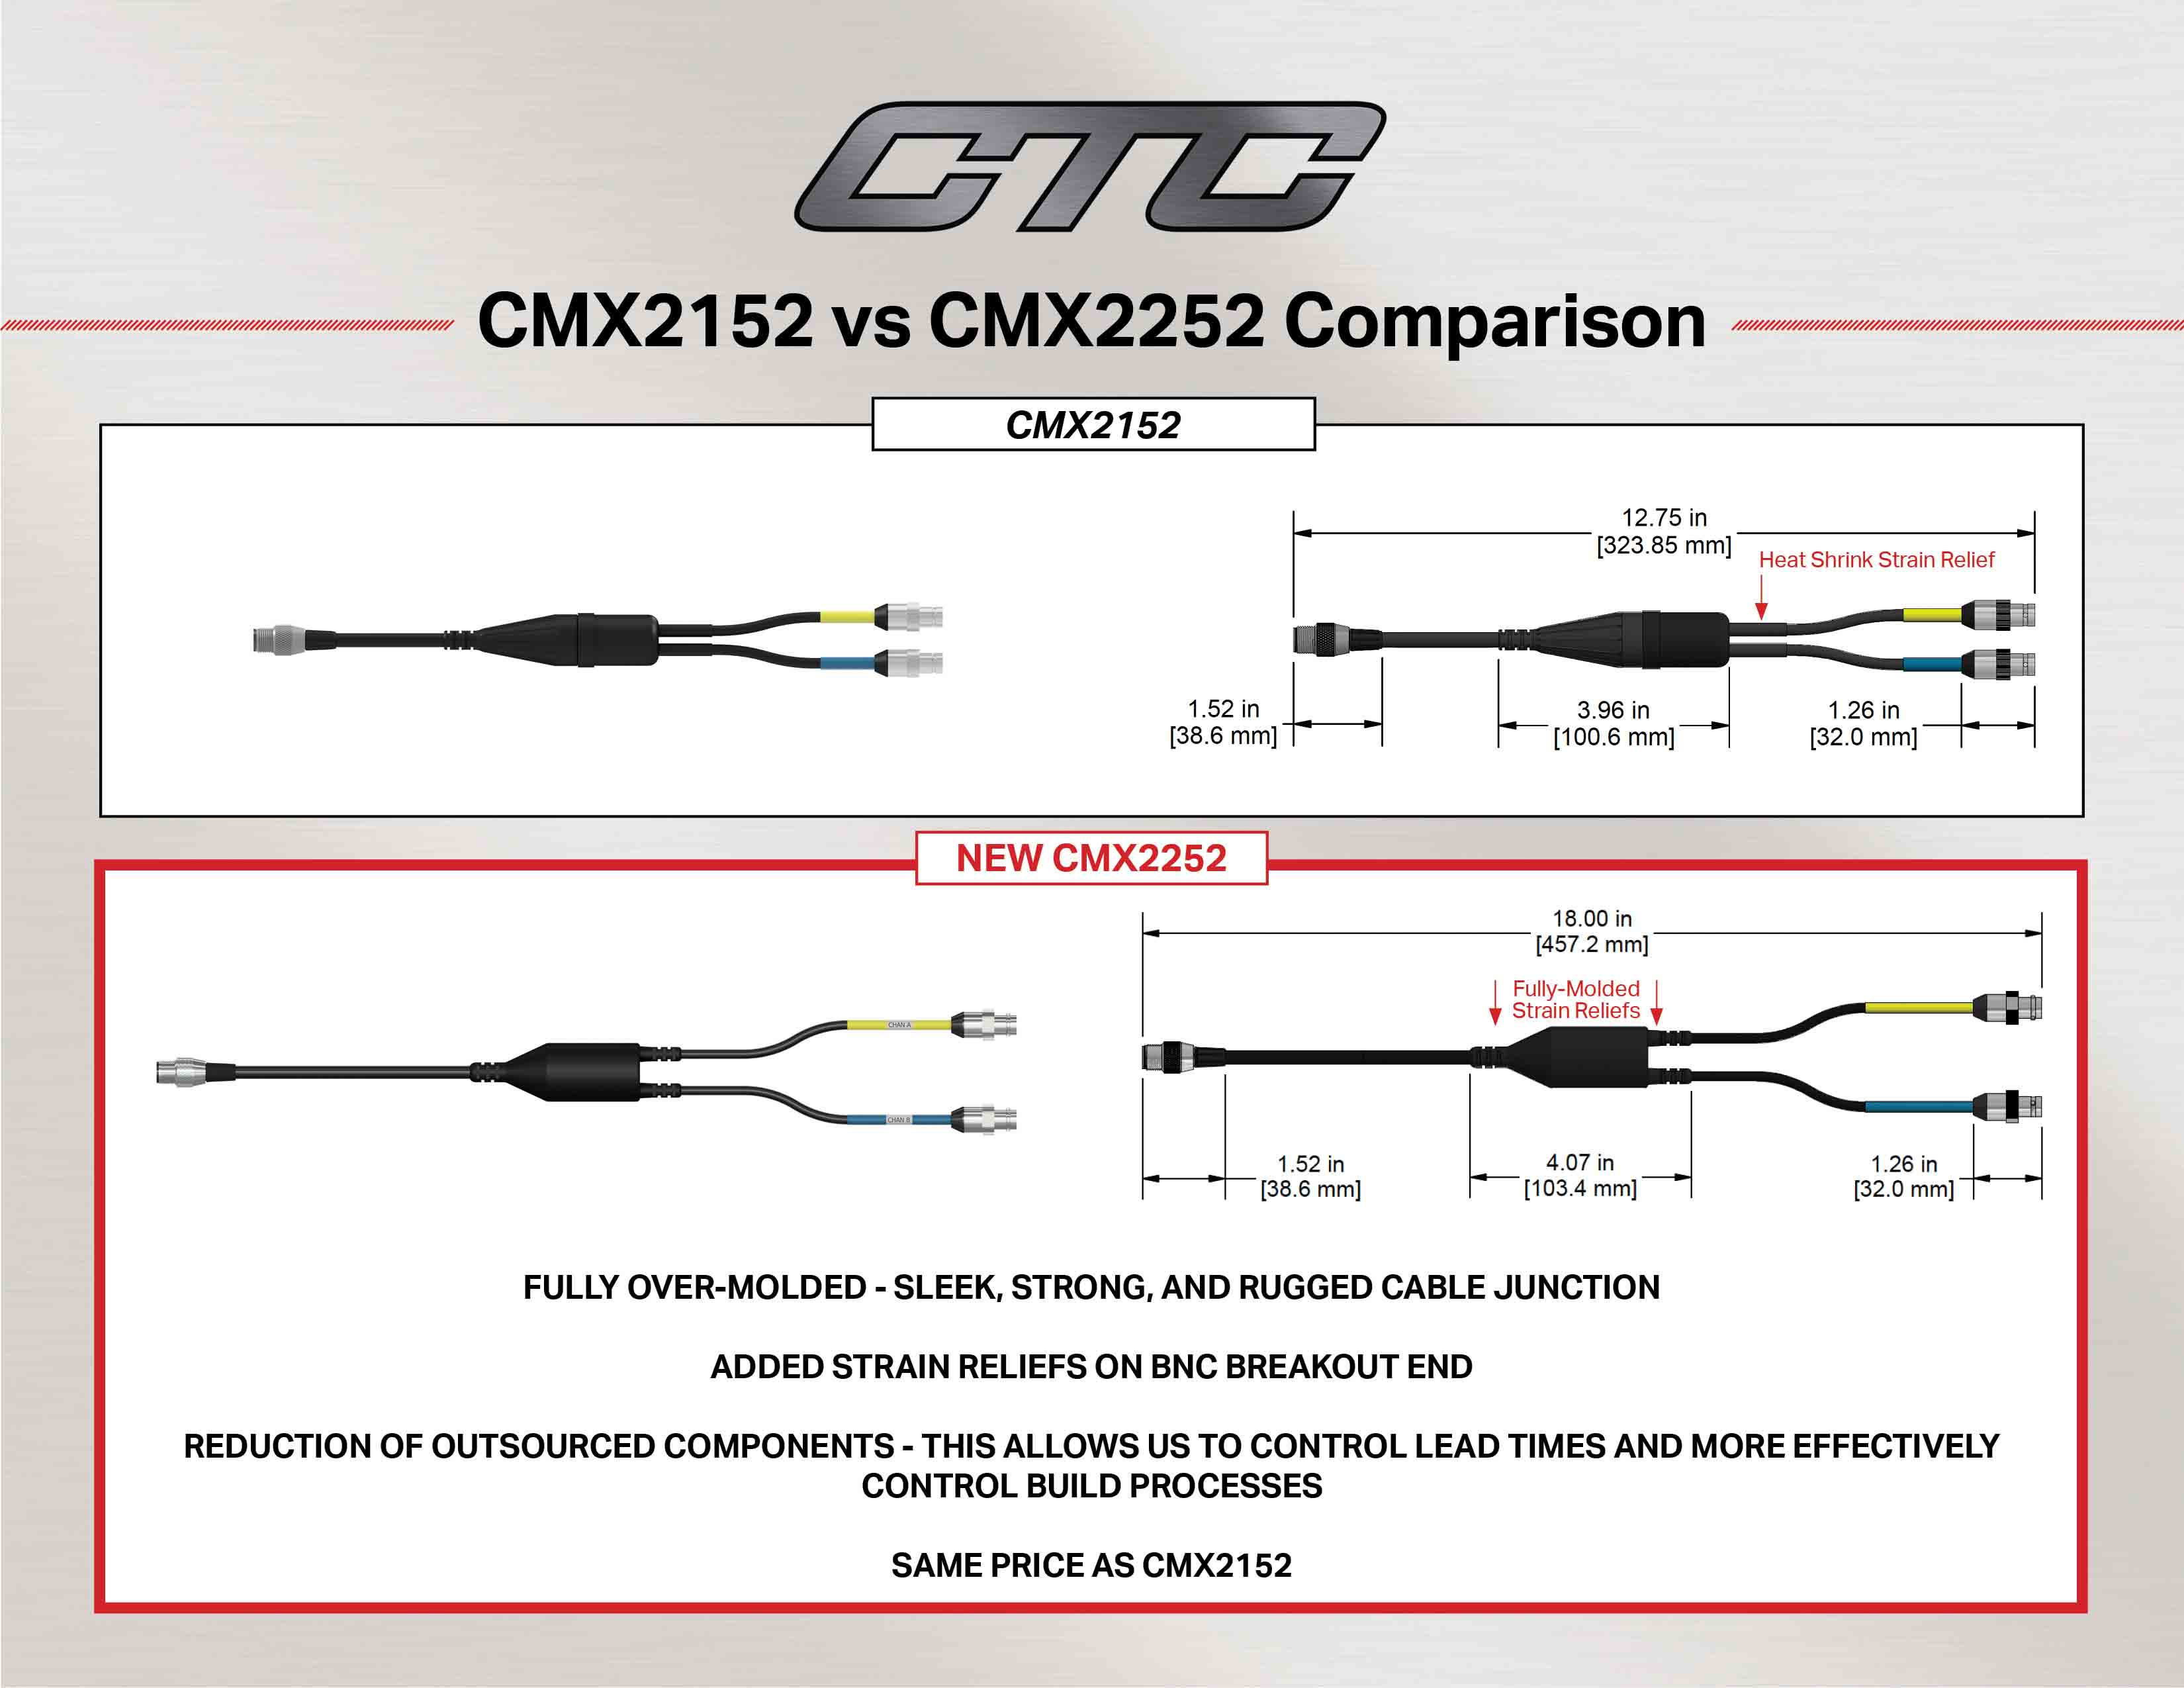 CMX2152 vs CMX2252 Cable Comparison diagram and measurements